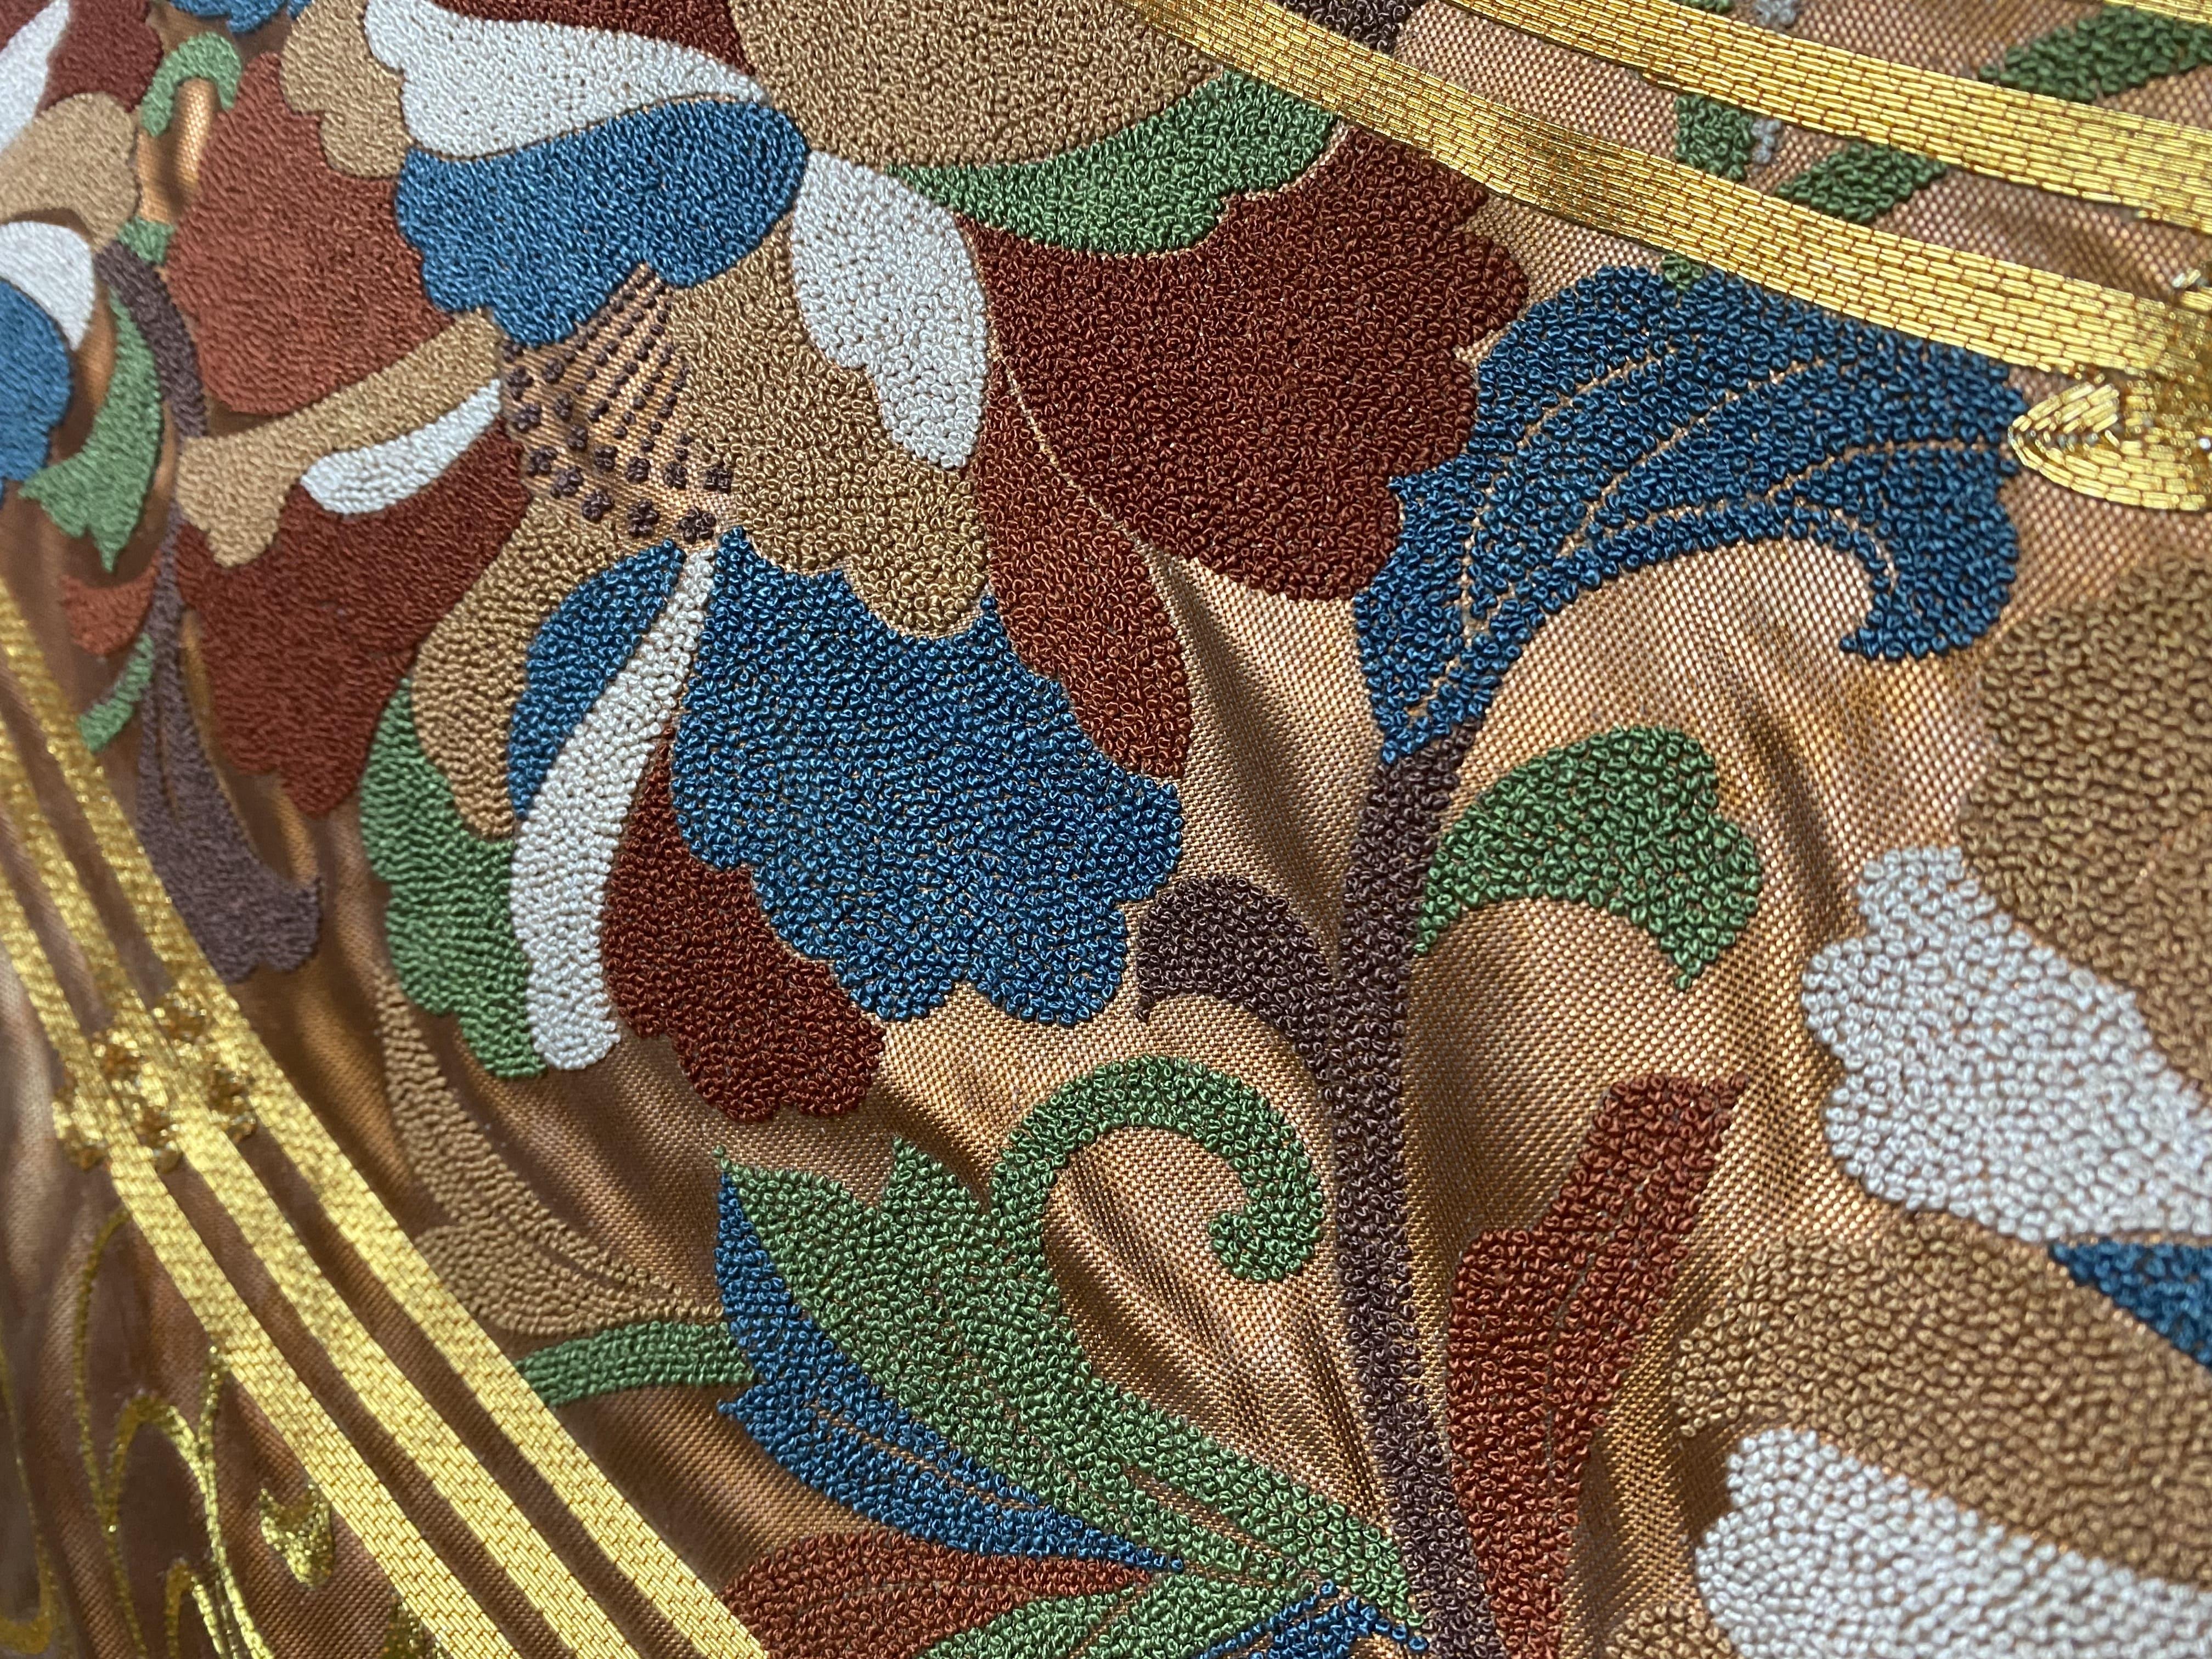 Pfingstrosenbrücke von Kimono-Couture

*Japanische Kimono-Kunst
*Handgefertigt von Kimono-Couture
*Einzigartige japanische Kunst

 Das erste, was an diesem Obi ins Auge sticht, ist die bunte Pfingstrose. Pfingstrosen, auch bekannt als 